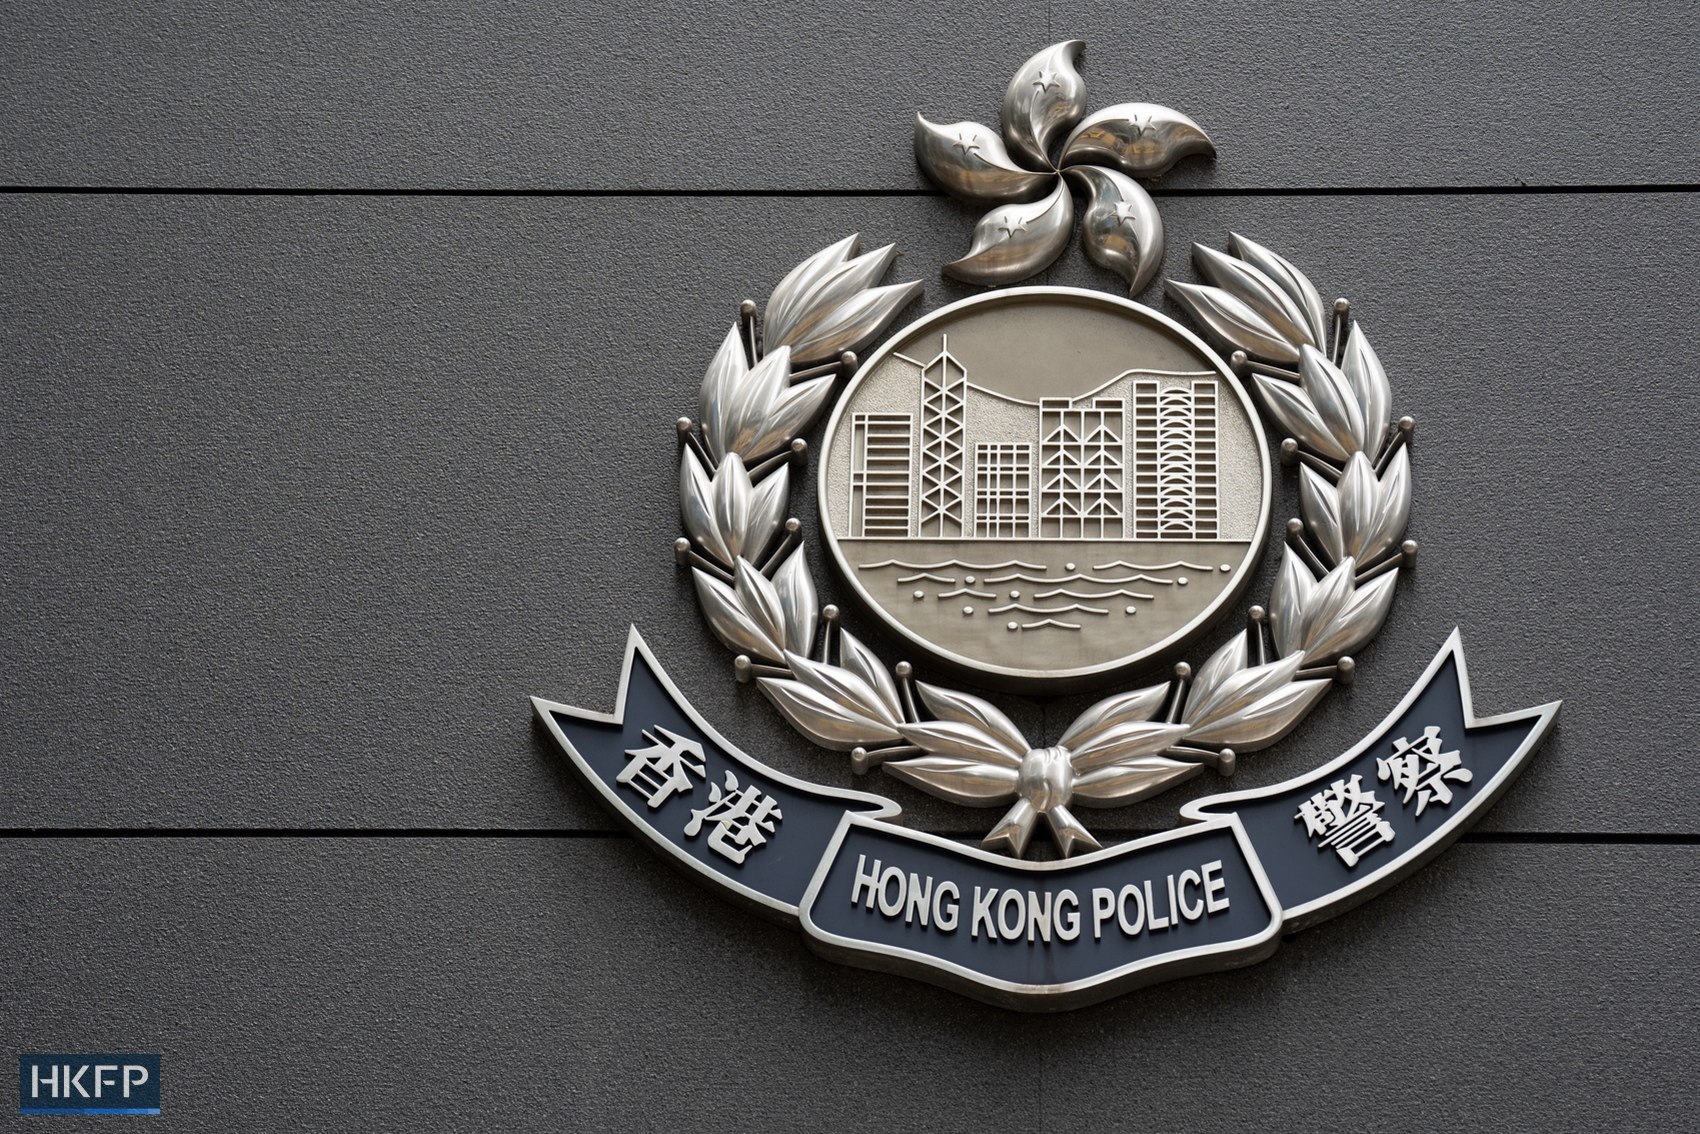 Hong Kong Police. Photo: Kyle Lam/HKFP.